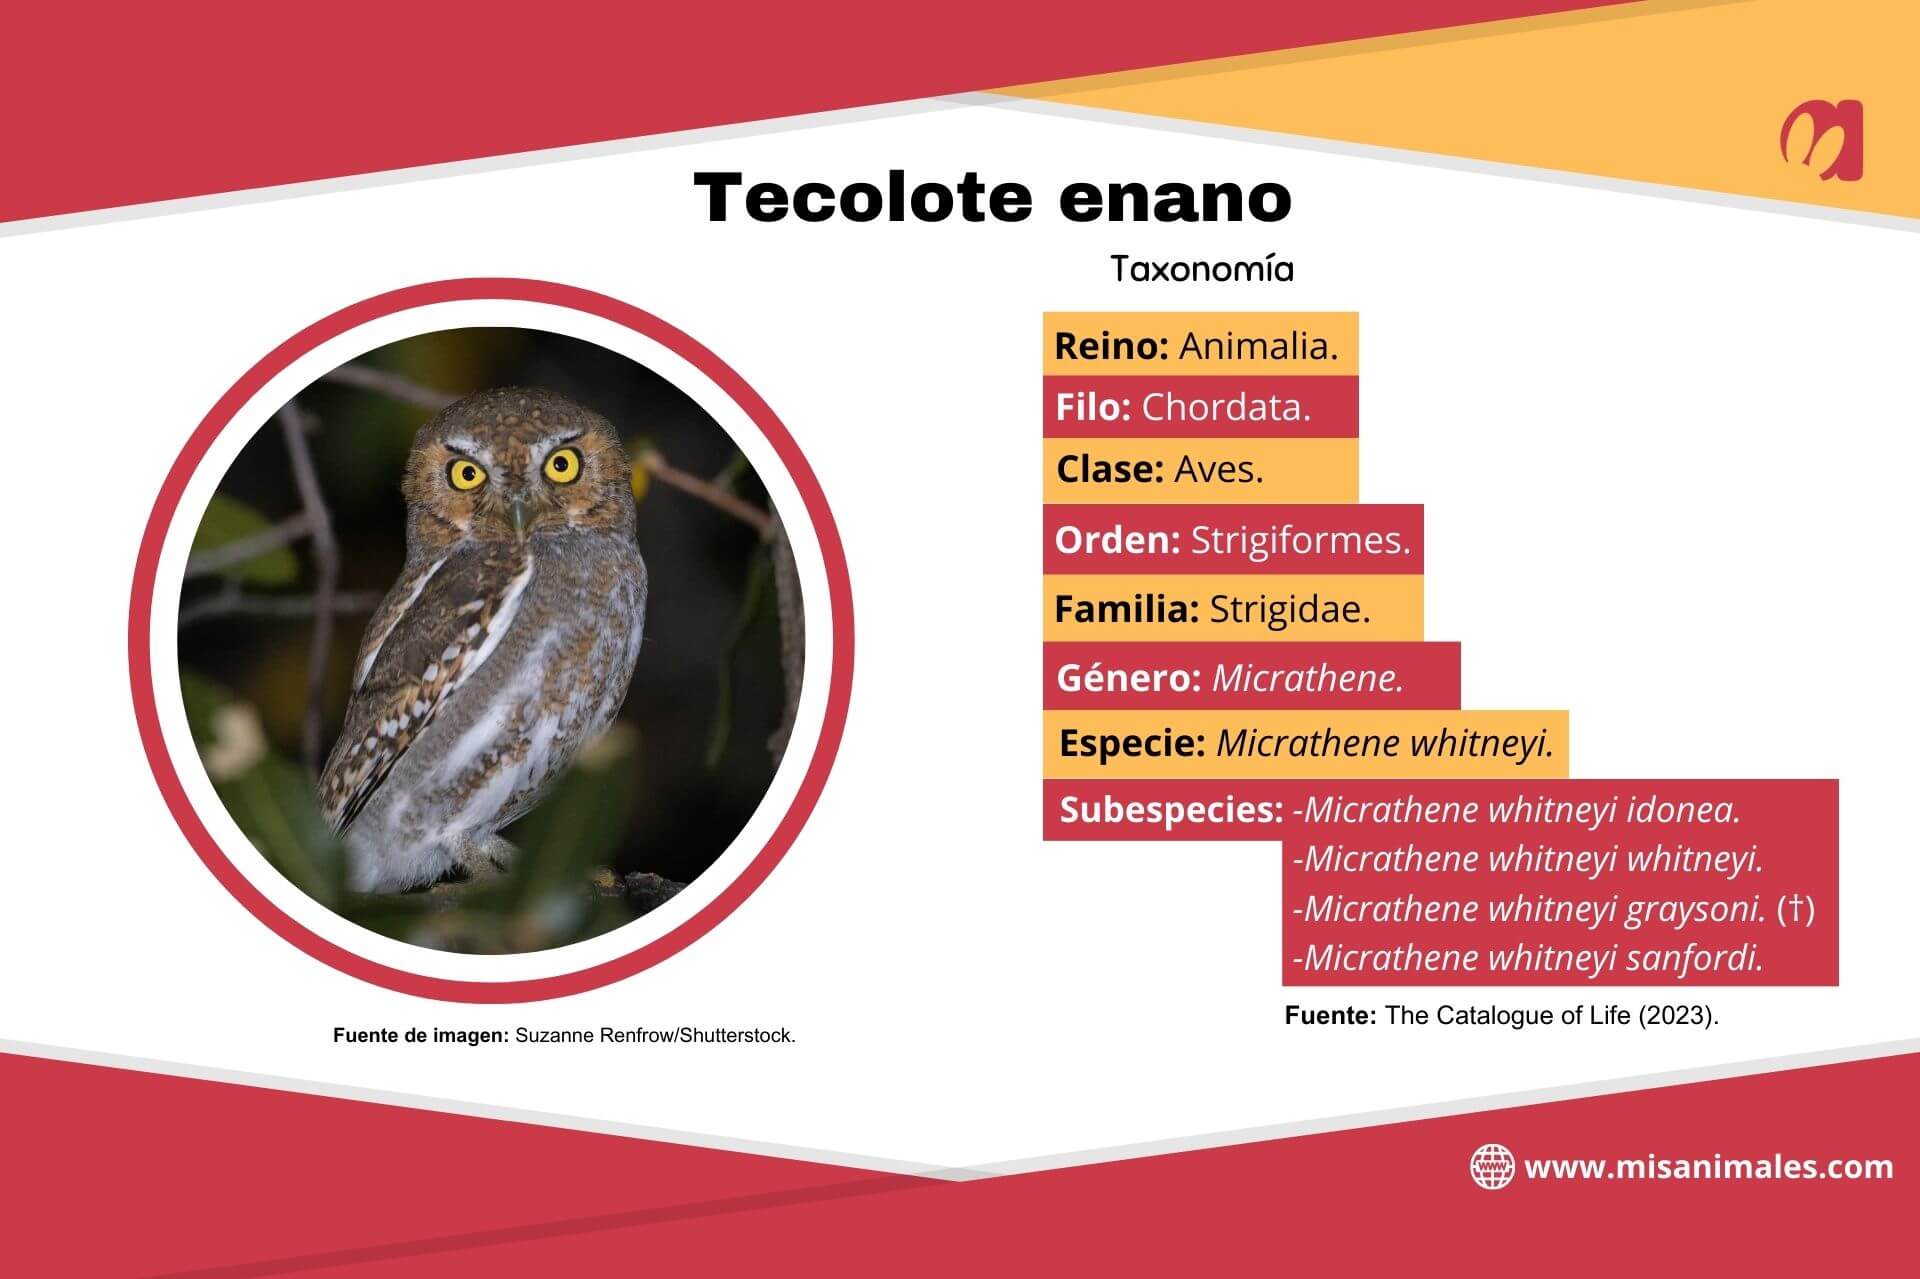 Fiche d'information sur la taxonomie de la chouette naine, avec photo.